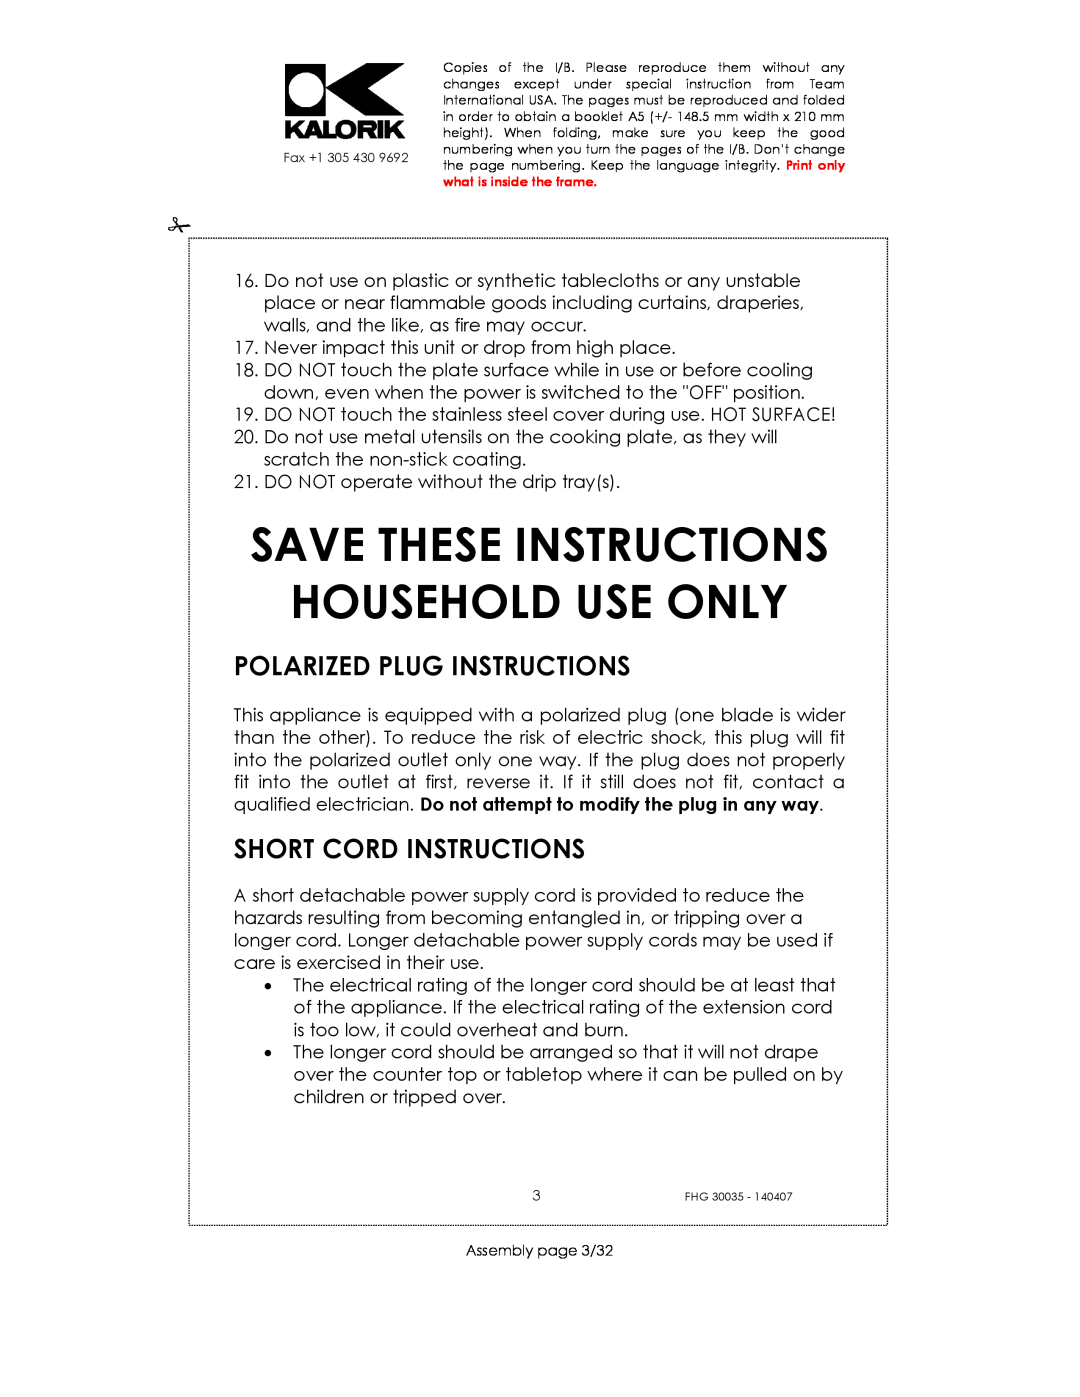 Kalorik FHG 30035 manual Polarized Plug Instructions, Short Cord Instructions, Save These Instructions Household Use Only 